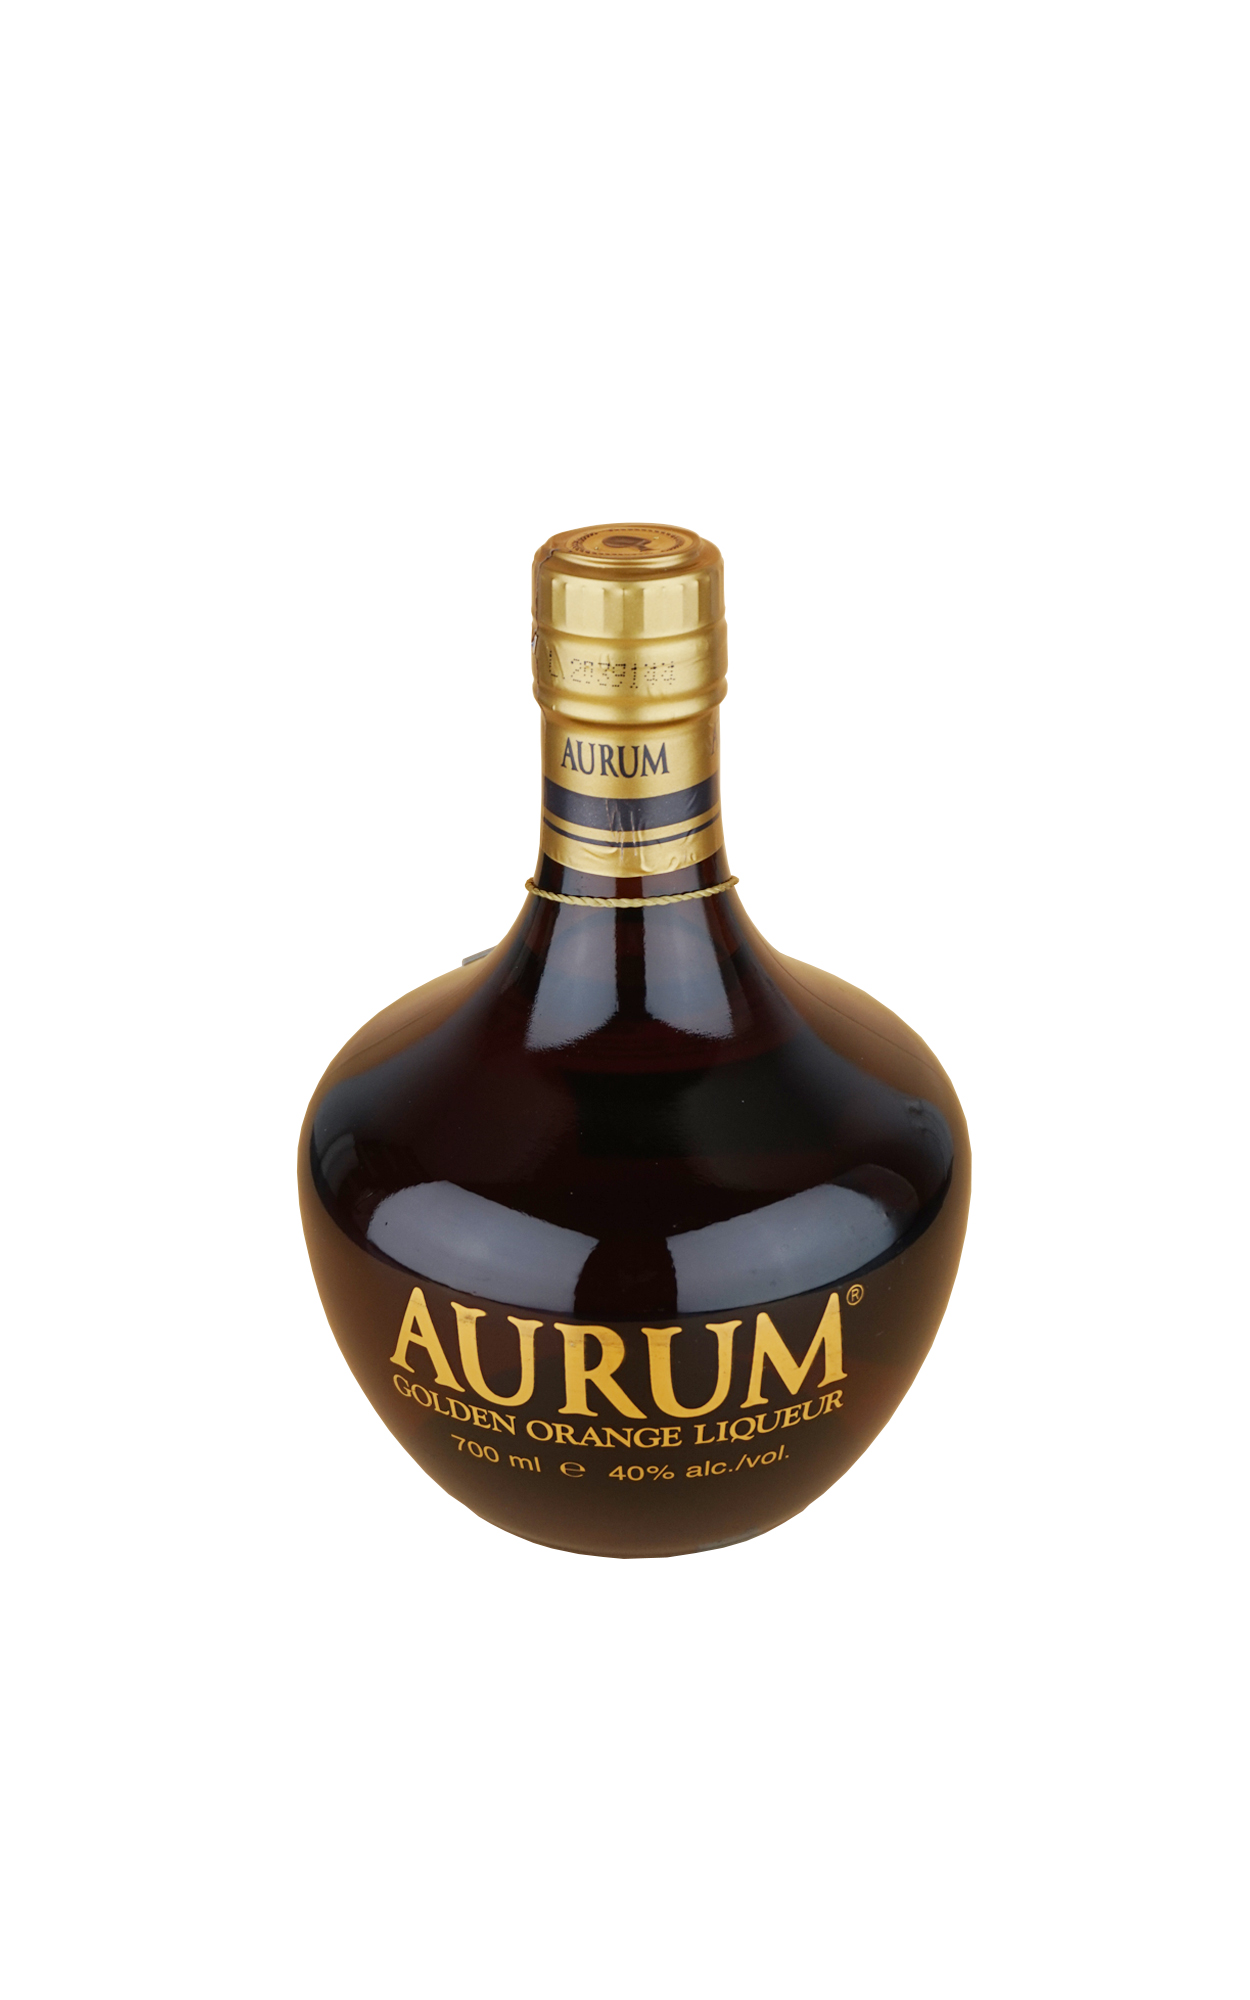 Aurum Golden Orange Liqueur